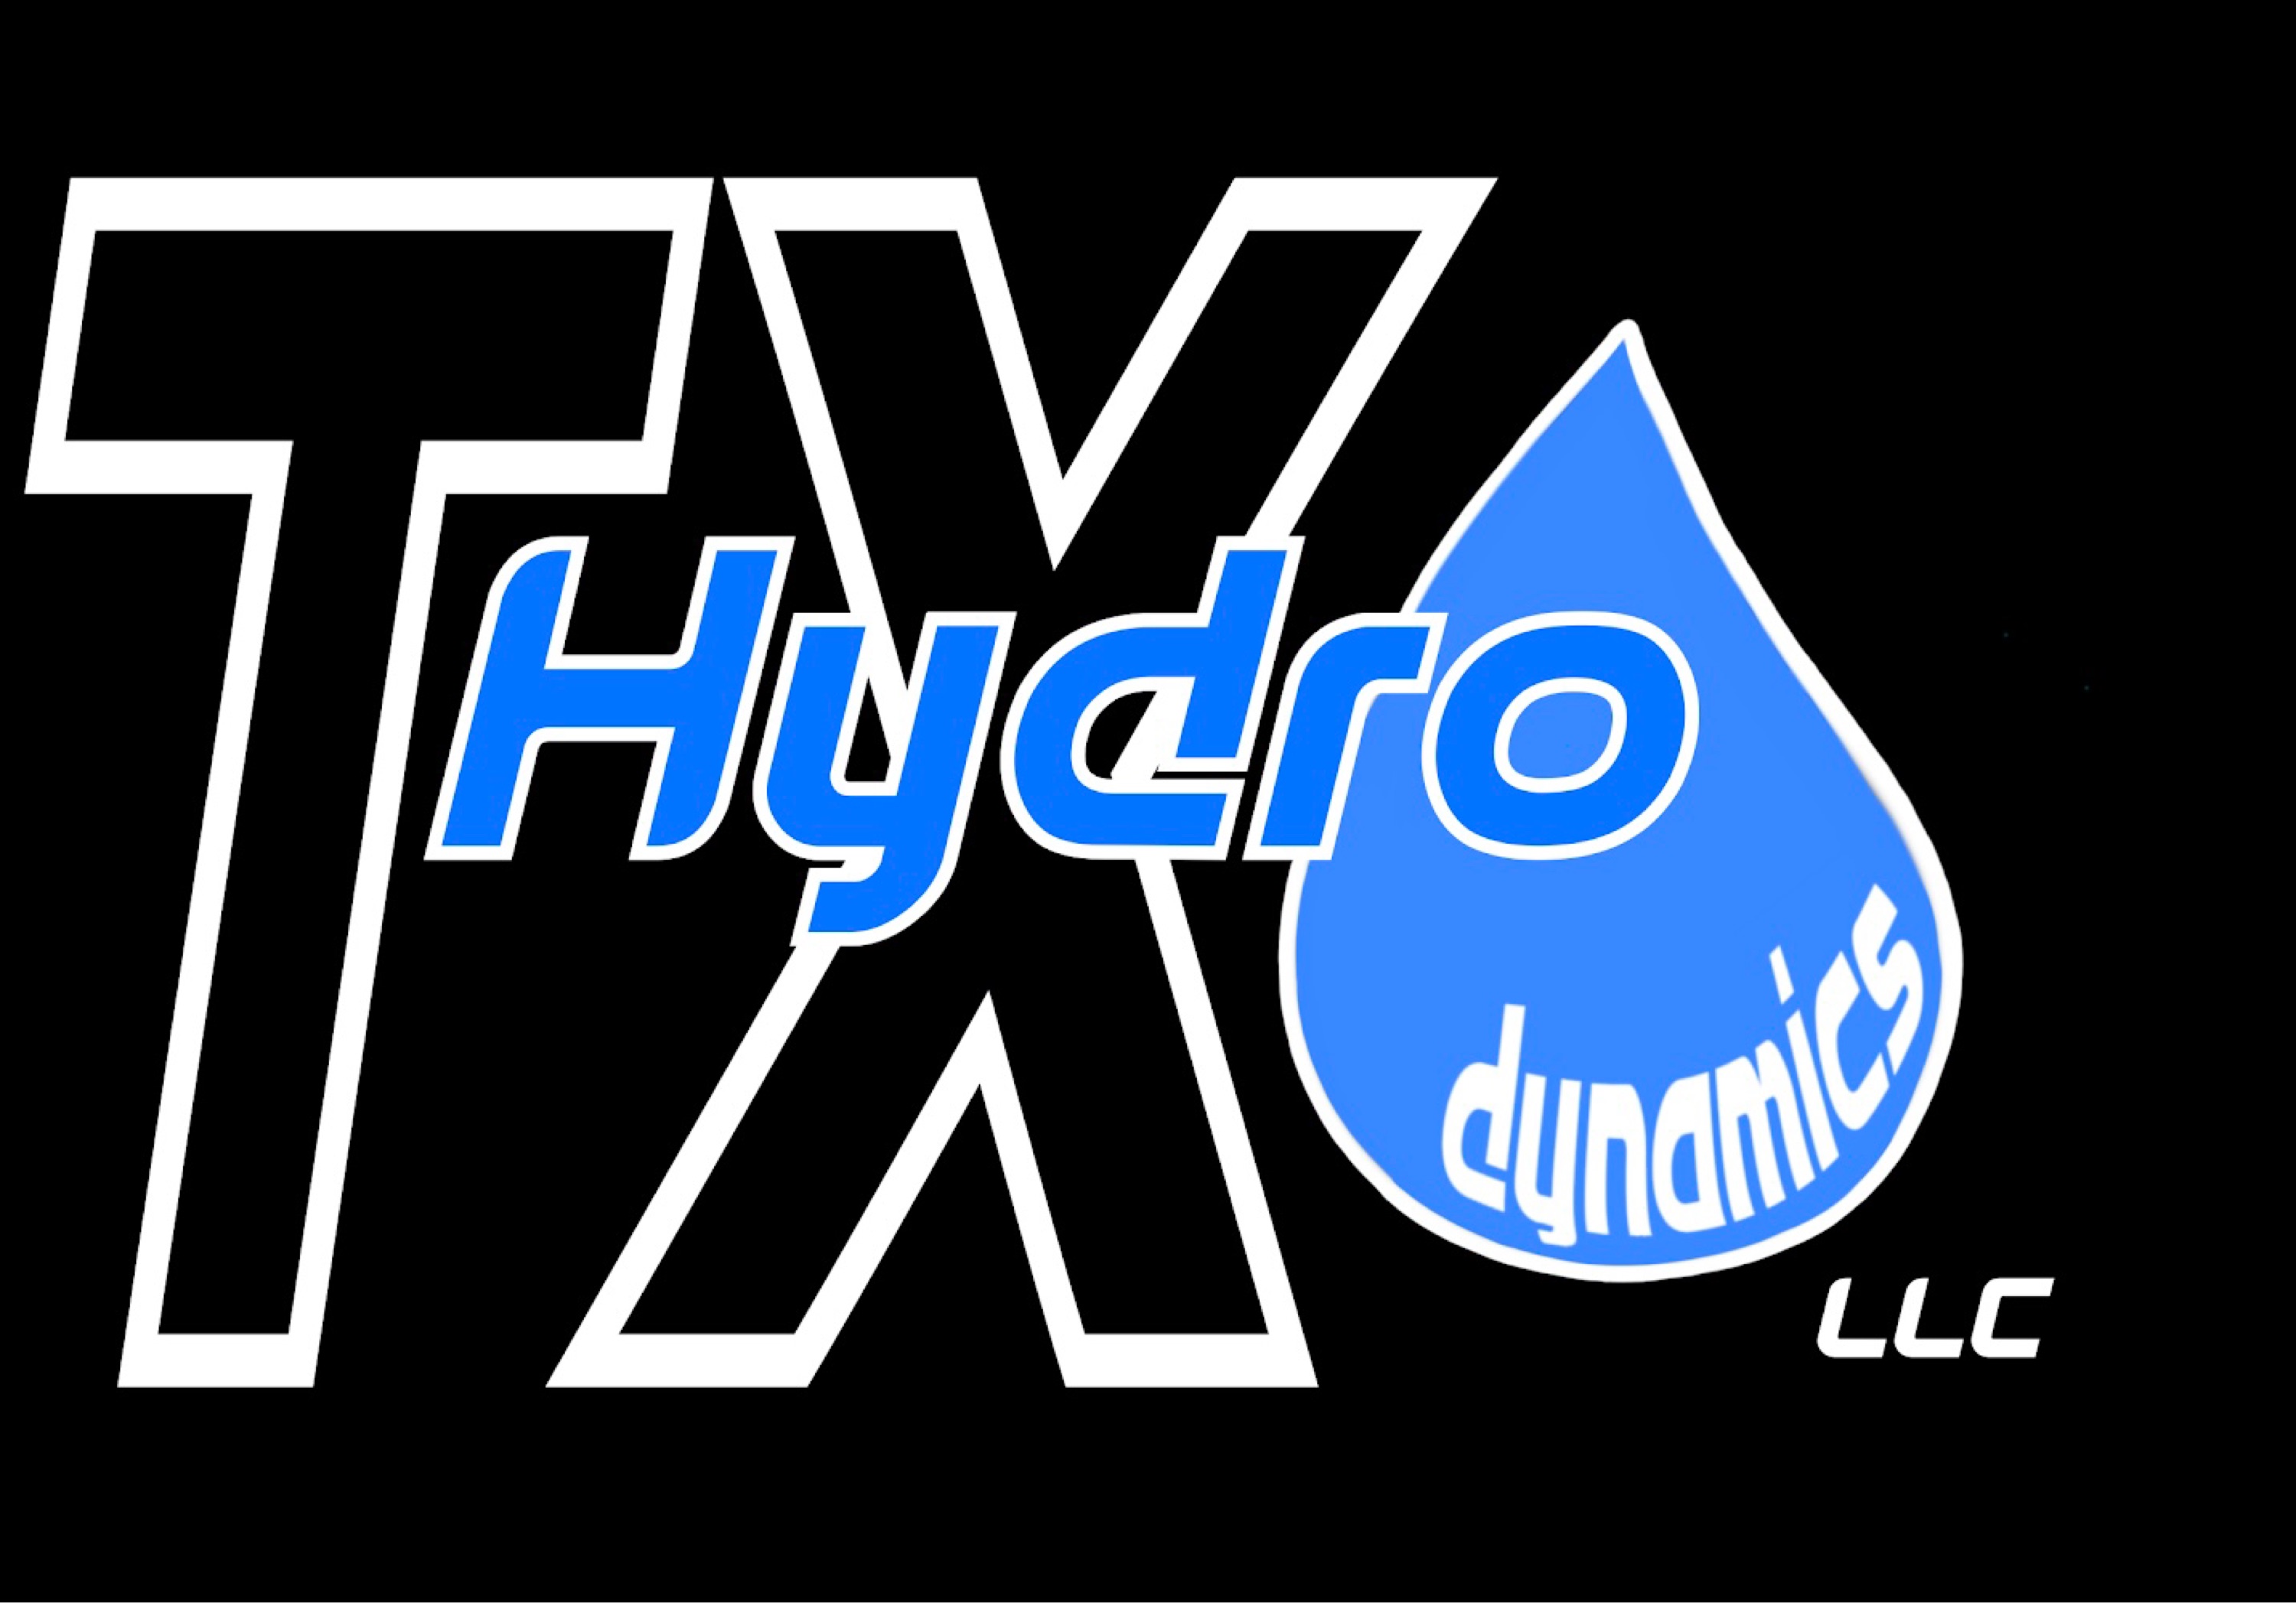 TX Hydro Dynamics LLC Logo